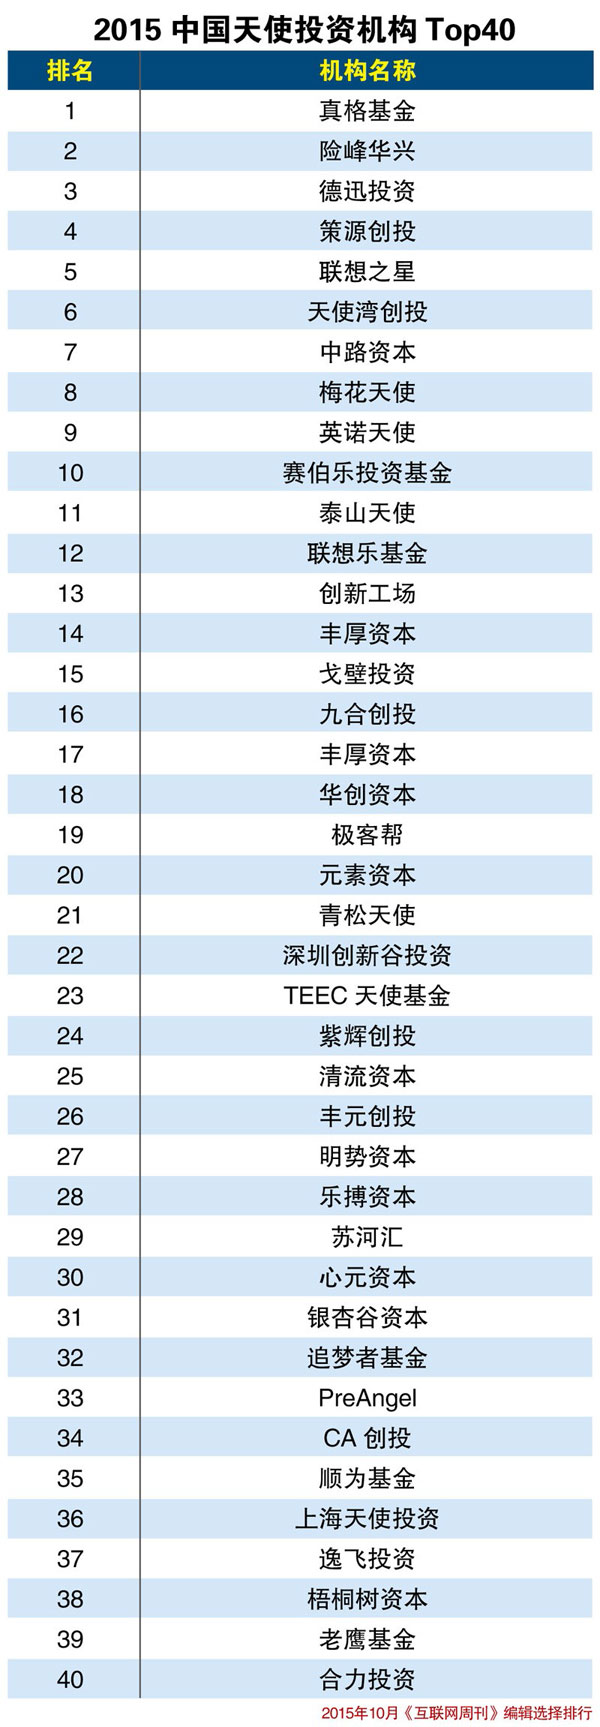 2015中国天使投资机构TOP40”